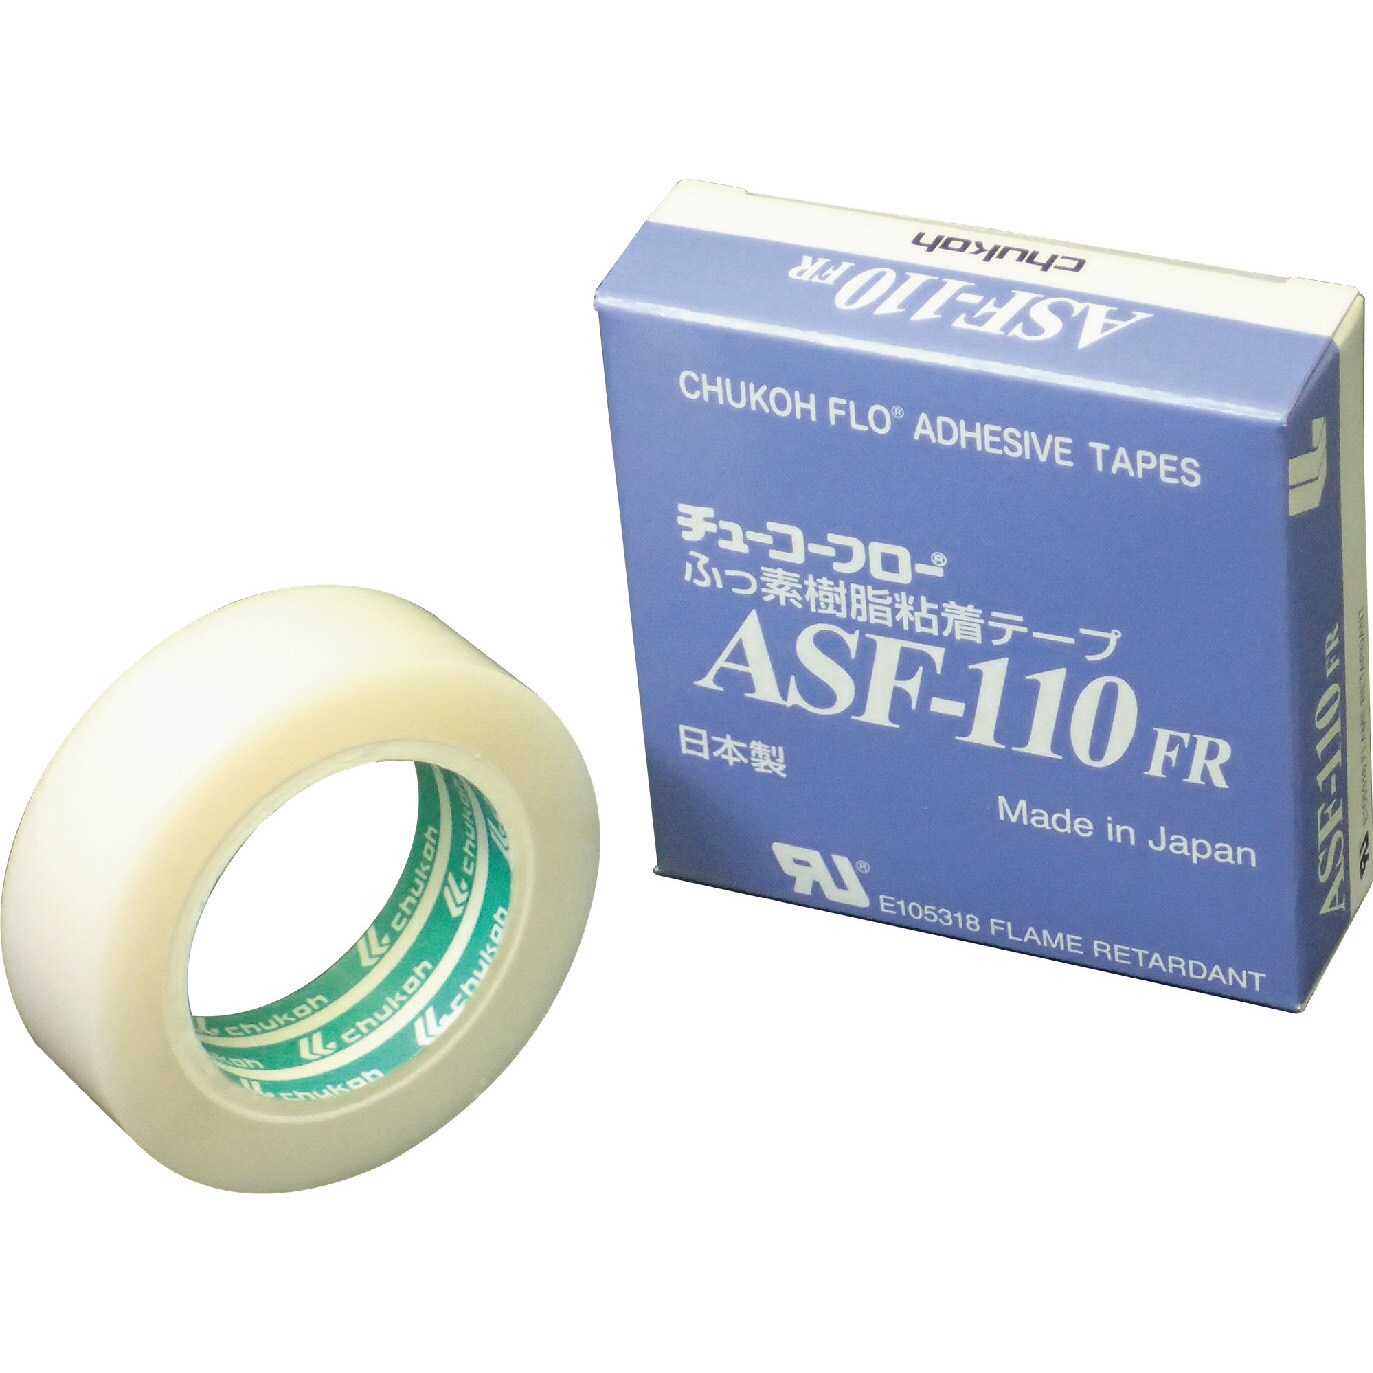 中興化成工業 株 チューコーフロー フッ素樹脂粘着テープ ASF121FR 0.18t×150w×10m ASF121FR-18X150 期間限定 ポイント10倍 - 17